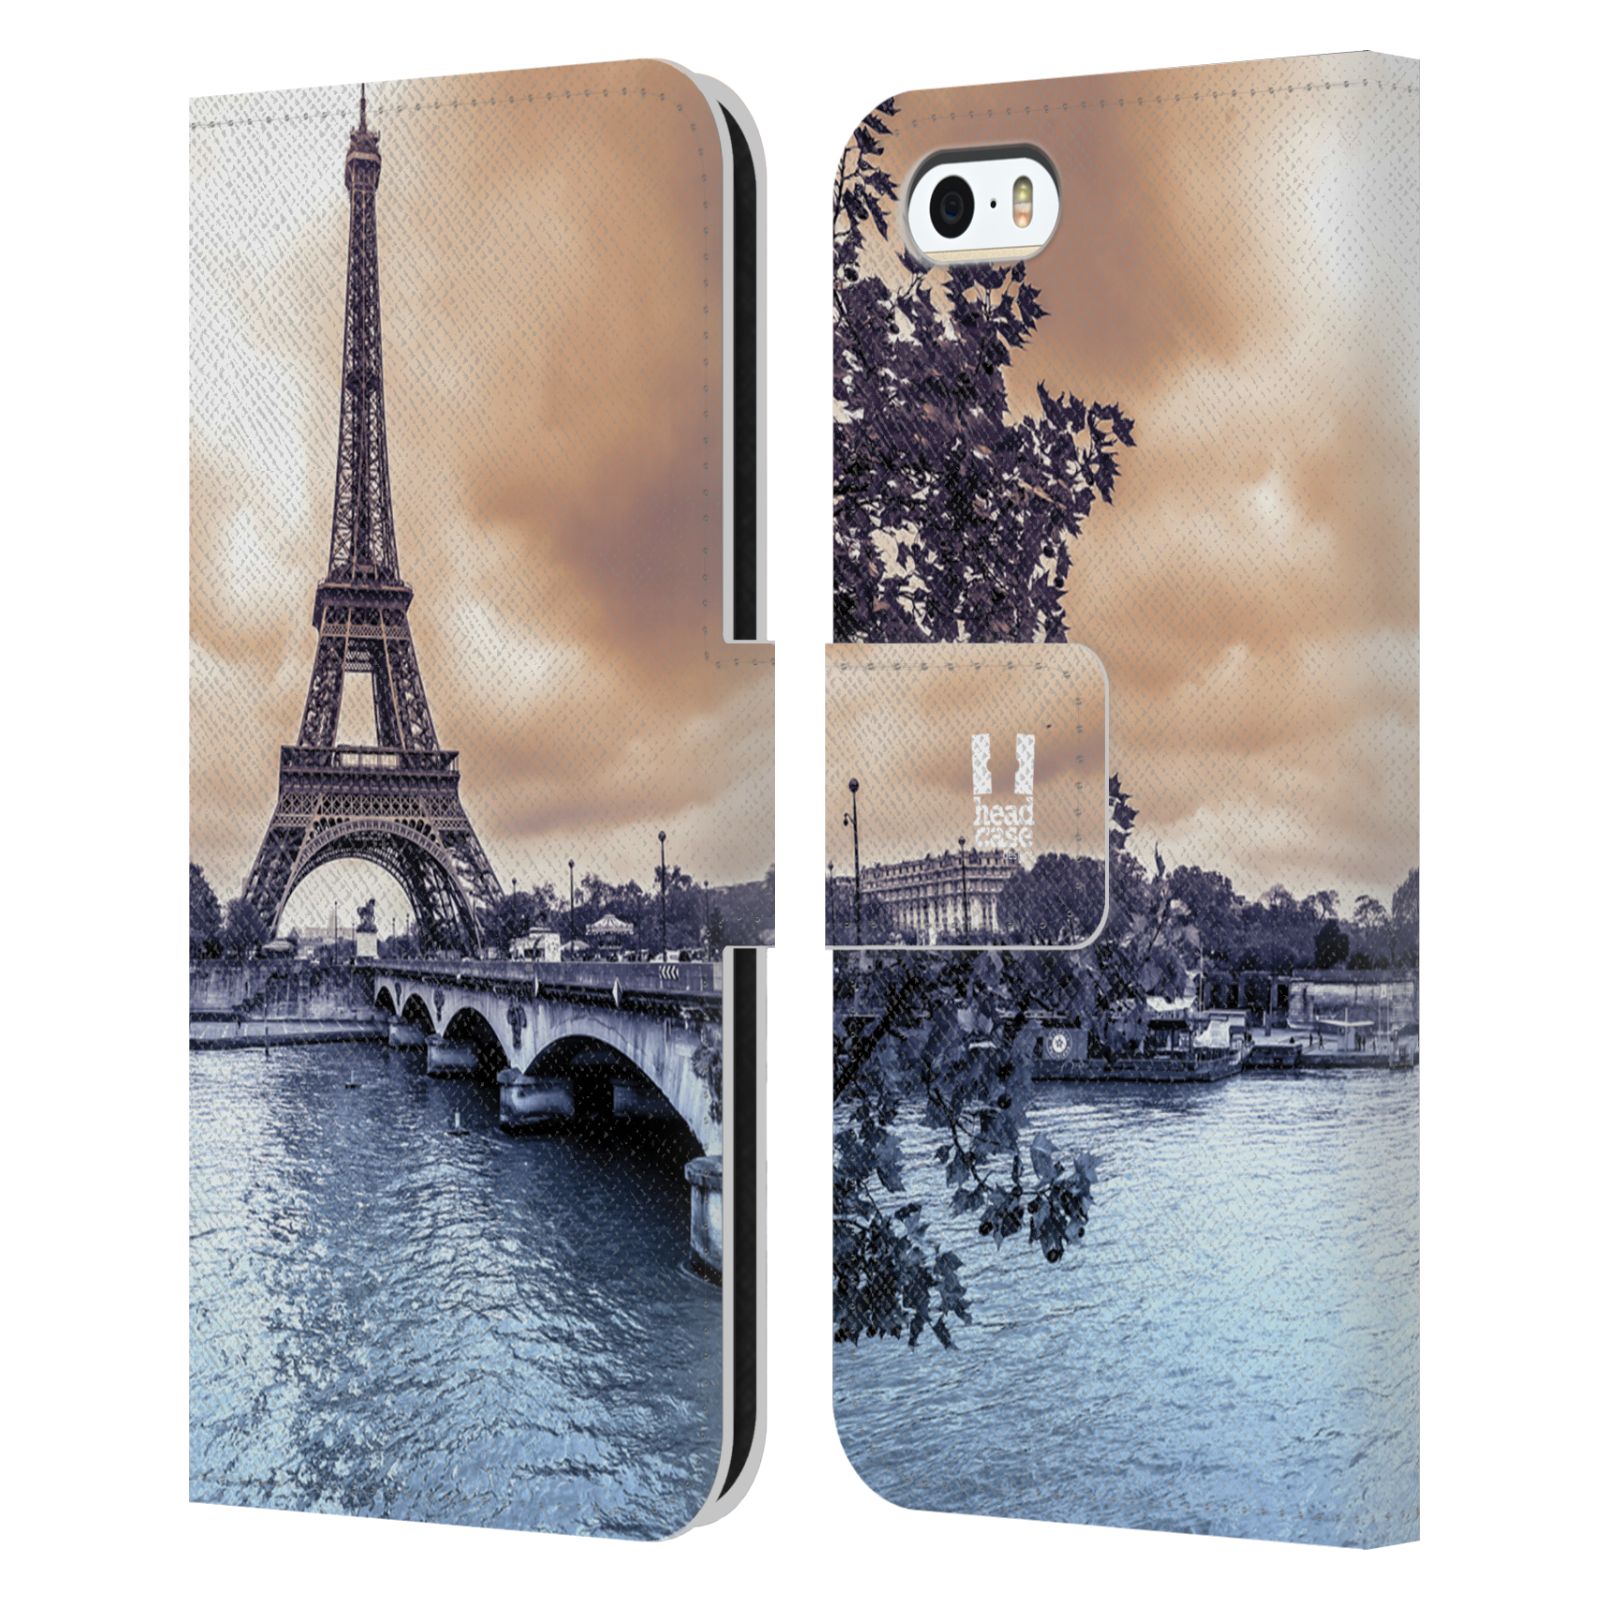 Pouzdro pro mobil Apple Iphone 5 / 5S / SE 2015 - Eiffelova věž Paříž - Francie